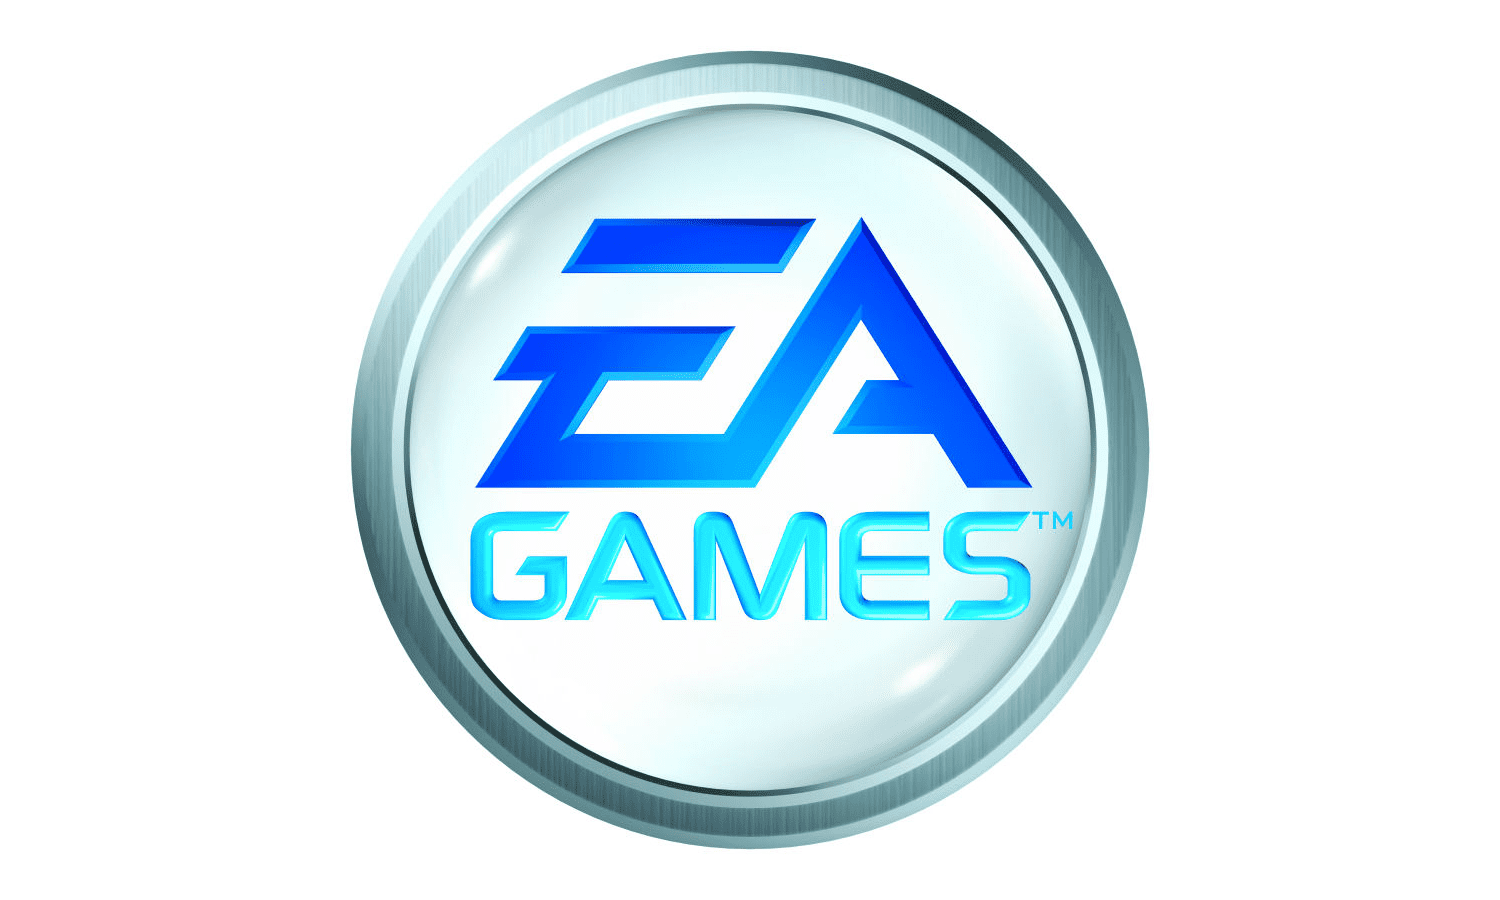 Gaming Logo - Free Vectors & PSDs to Download